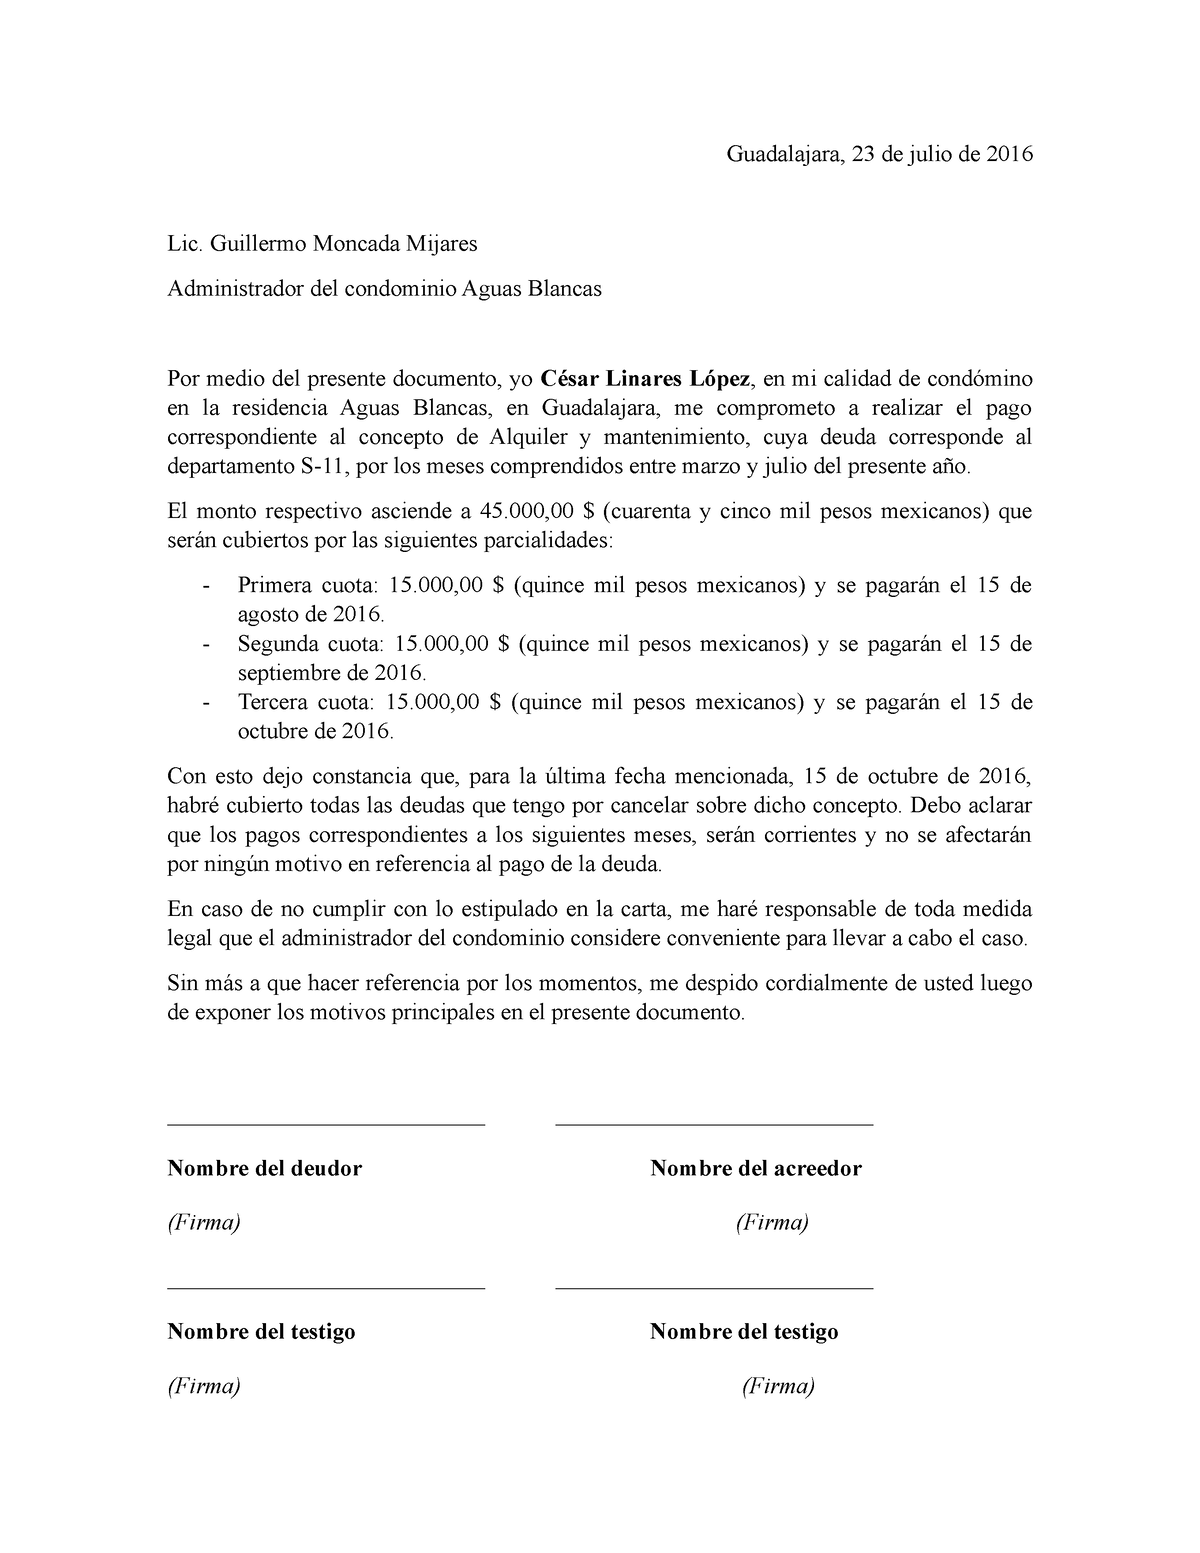 Ejemplo de carta compromiso de pago de alquiler - Guadalajara, 23 de julio  de 2016 Lic. Guillermo - Studocu